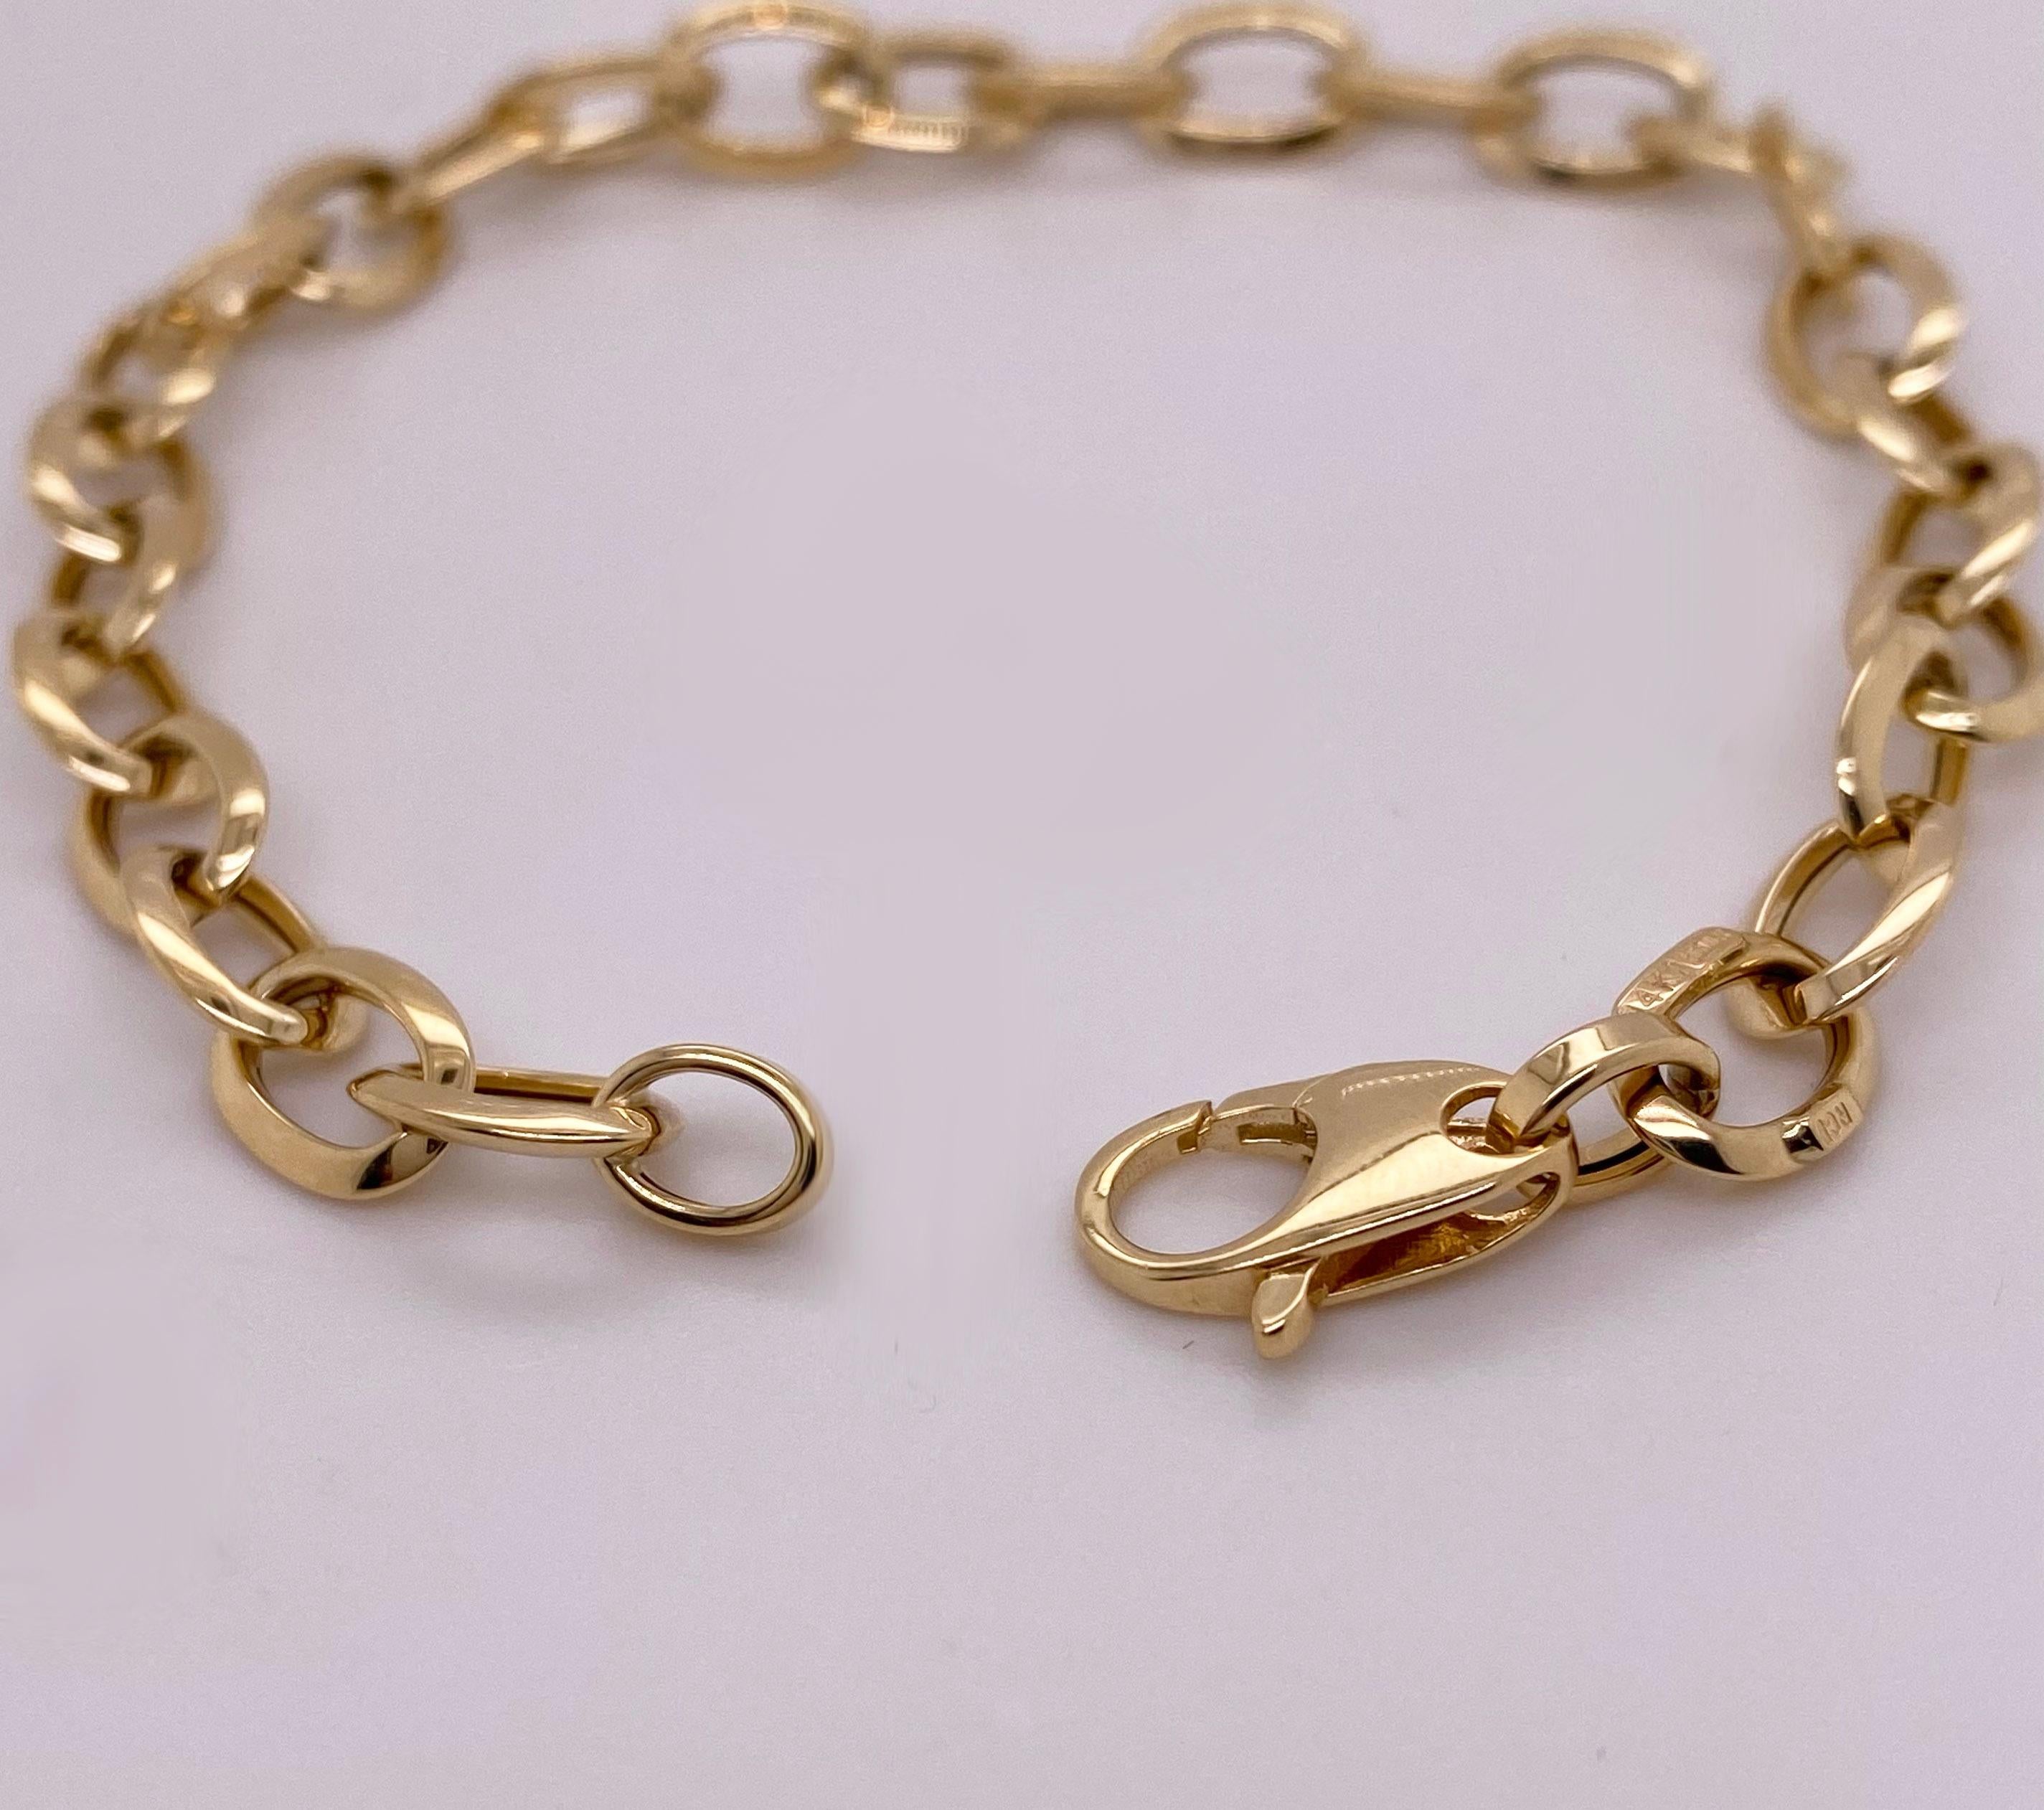 Goldketten sind wieder da und besser als je zuvor! Dieses Armband aus 14-karätigem Gelbgold ist eines der angesagtesten Kettendesigns im Modeschmuckbereich! Die goldene Kabelkette ist ein breites Design, das jedem Kleidungsstück Gewicht verleiht